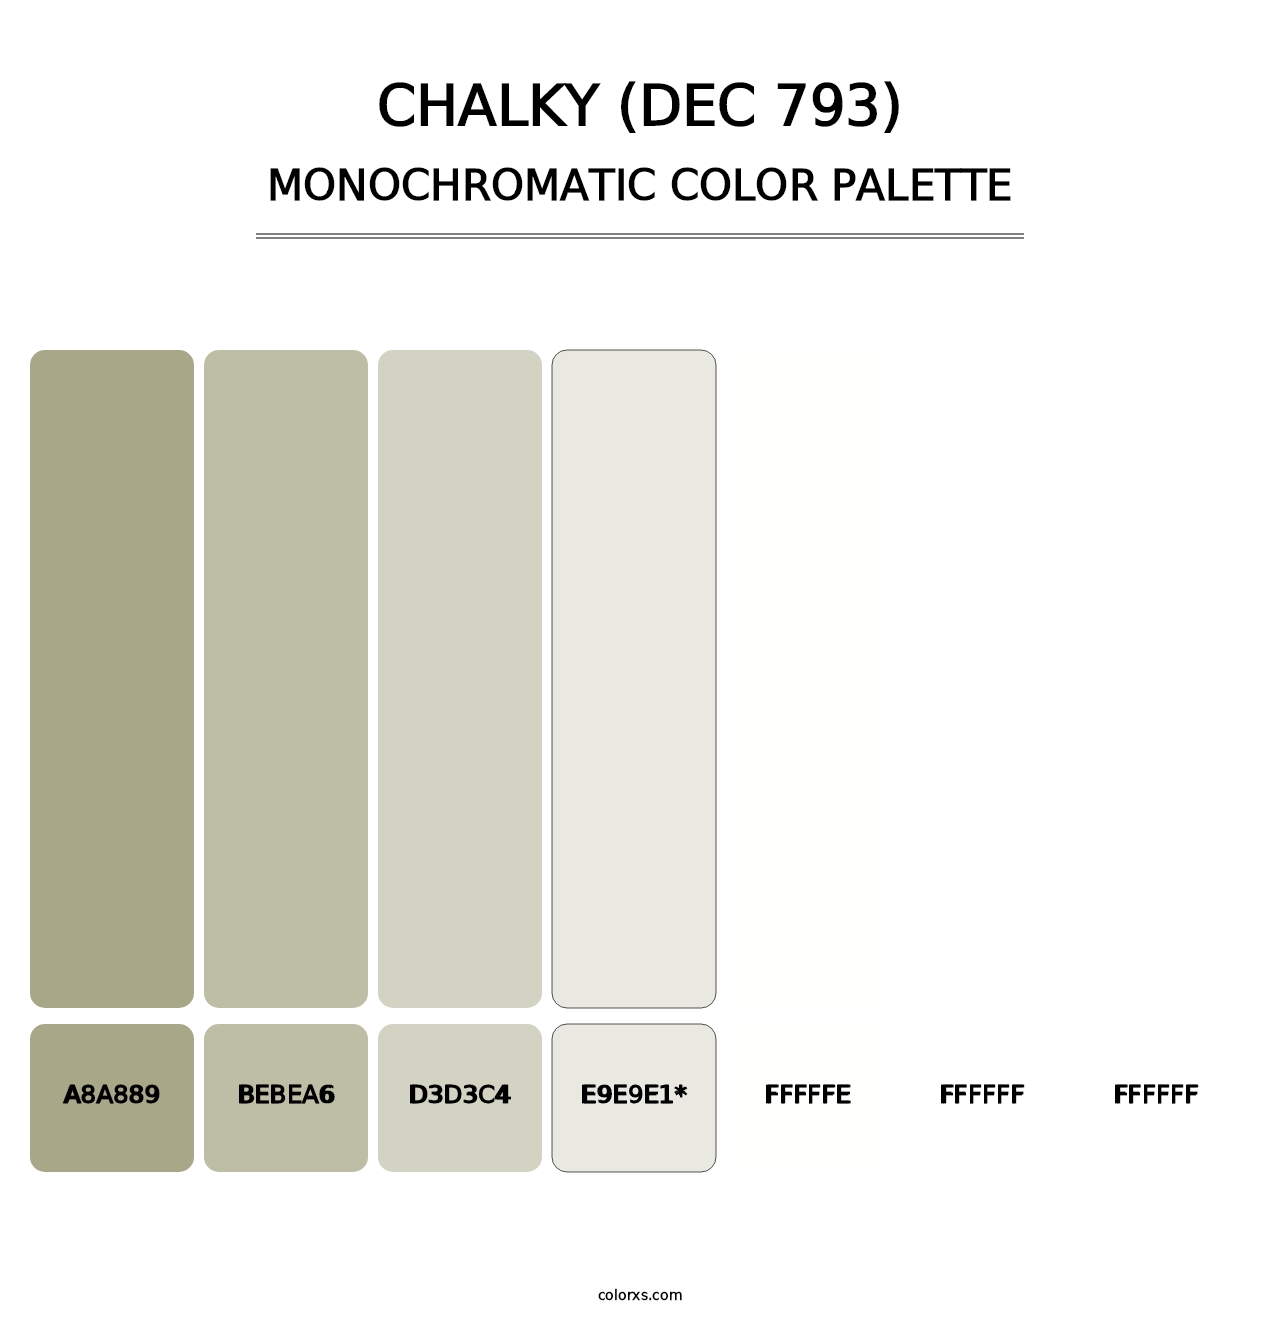 Chalky (DEC 793) - Monochromatic Color Palette